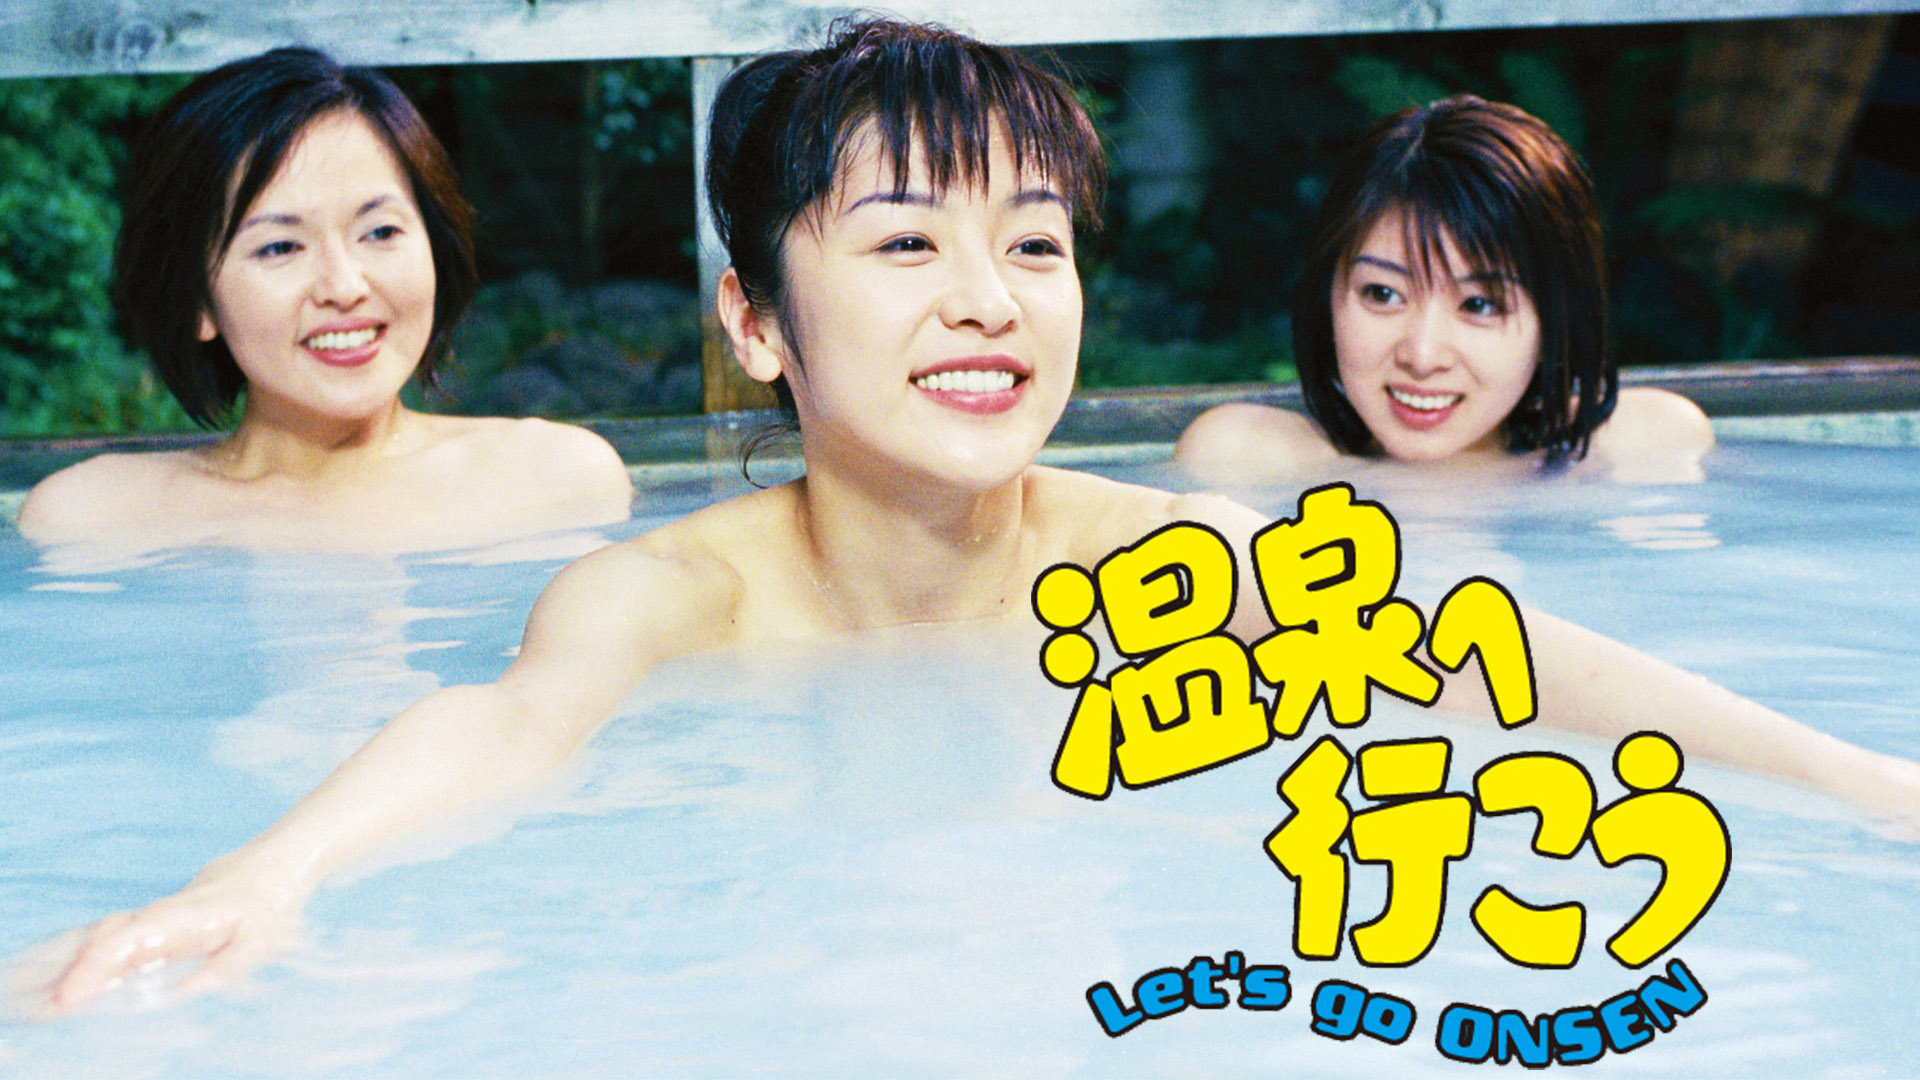 温泉へGO!(国内ドラマ / 2008) - 動画配信 | U-NEXT 31日間無料トライアル